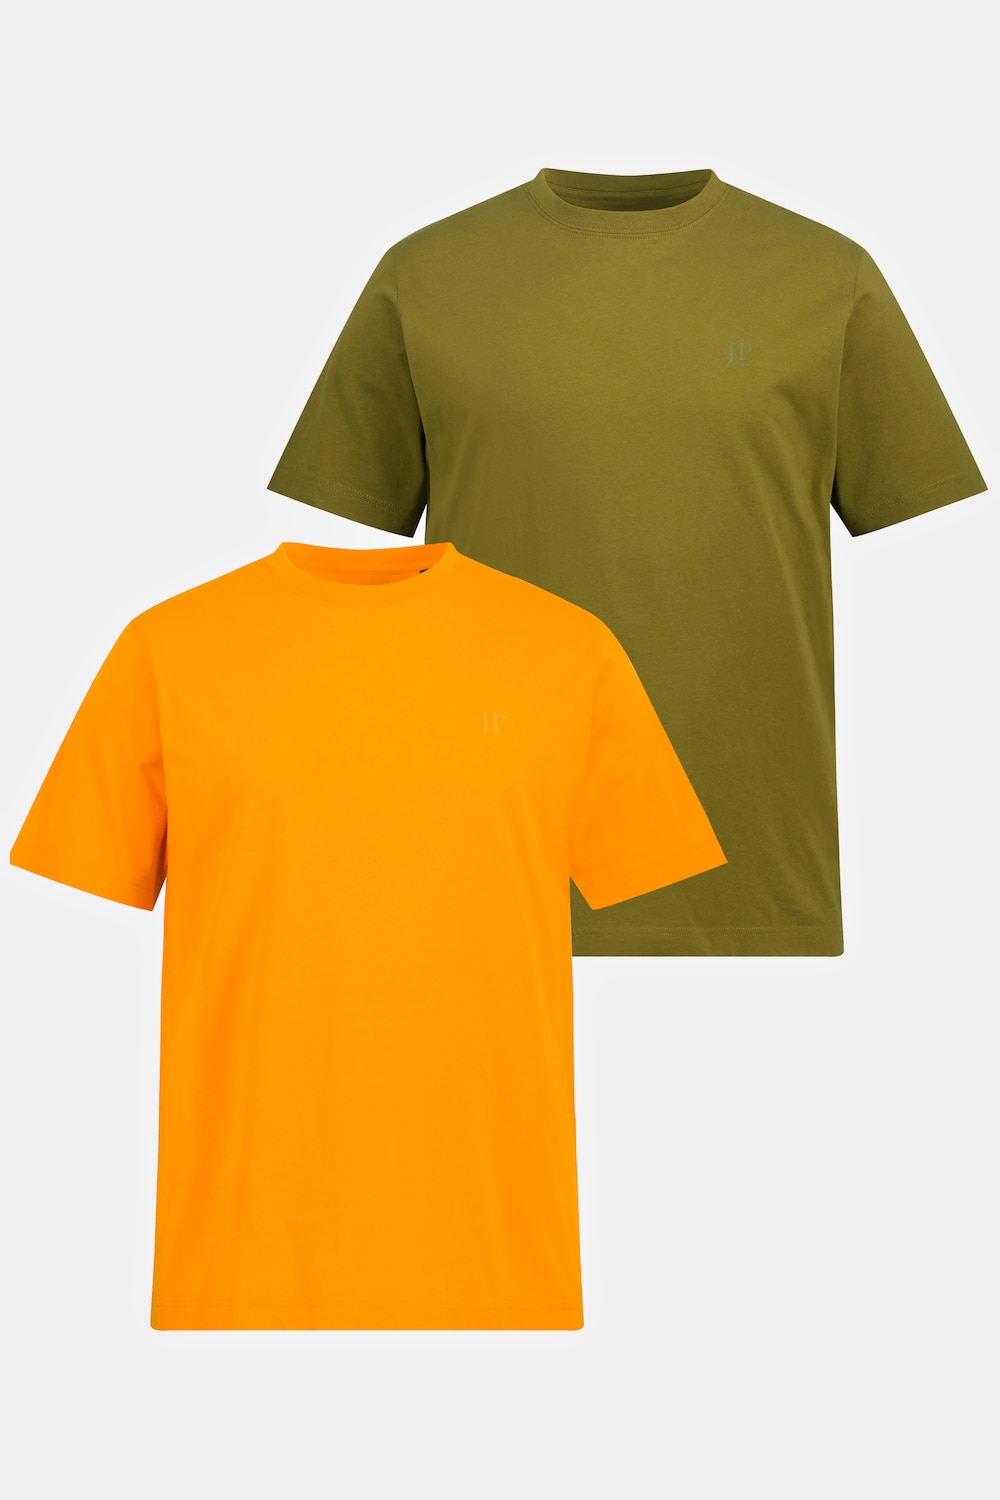 Große Größen T-Shirts, Herren, braun, Größe: 3XL, Baumwolle, JP1880